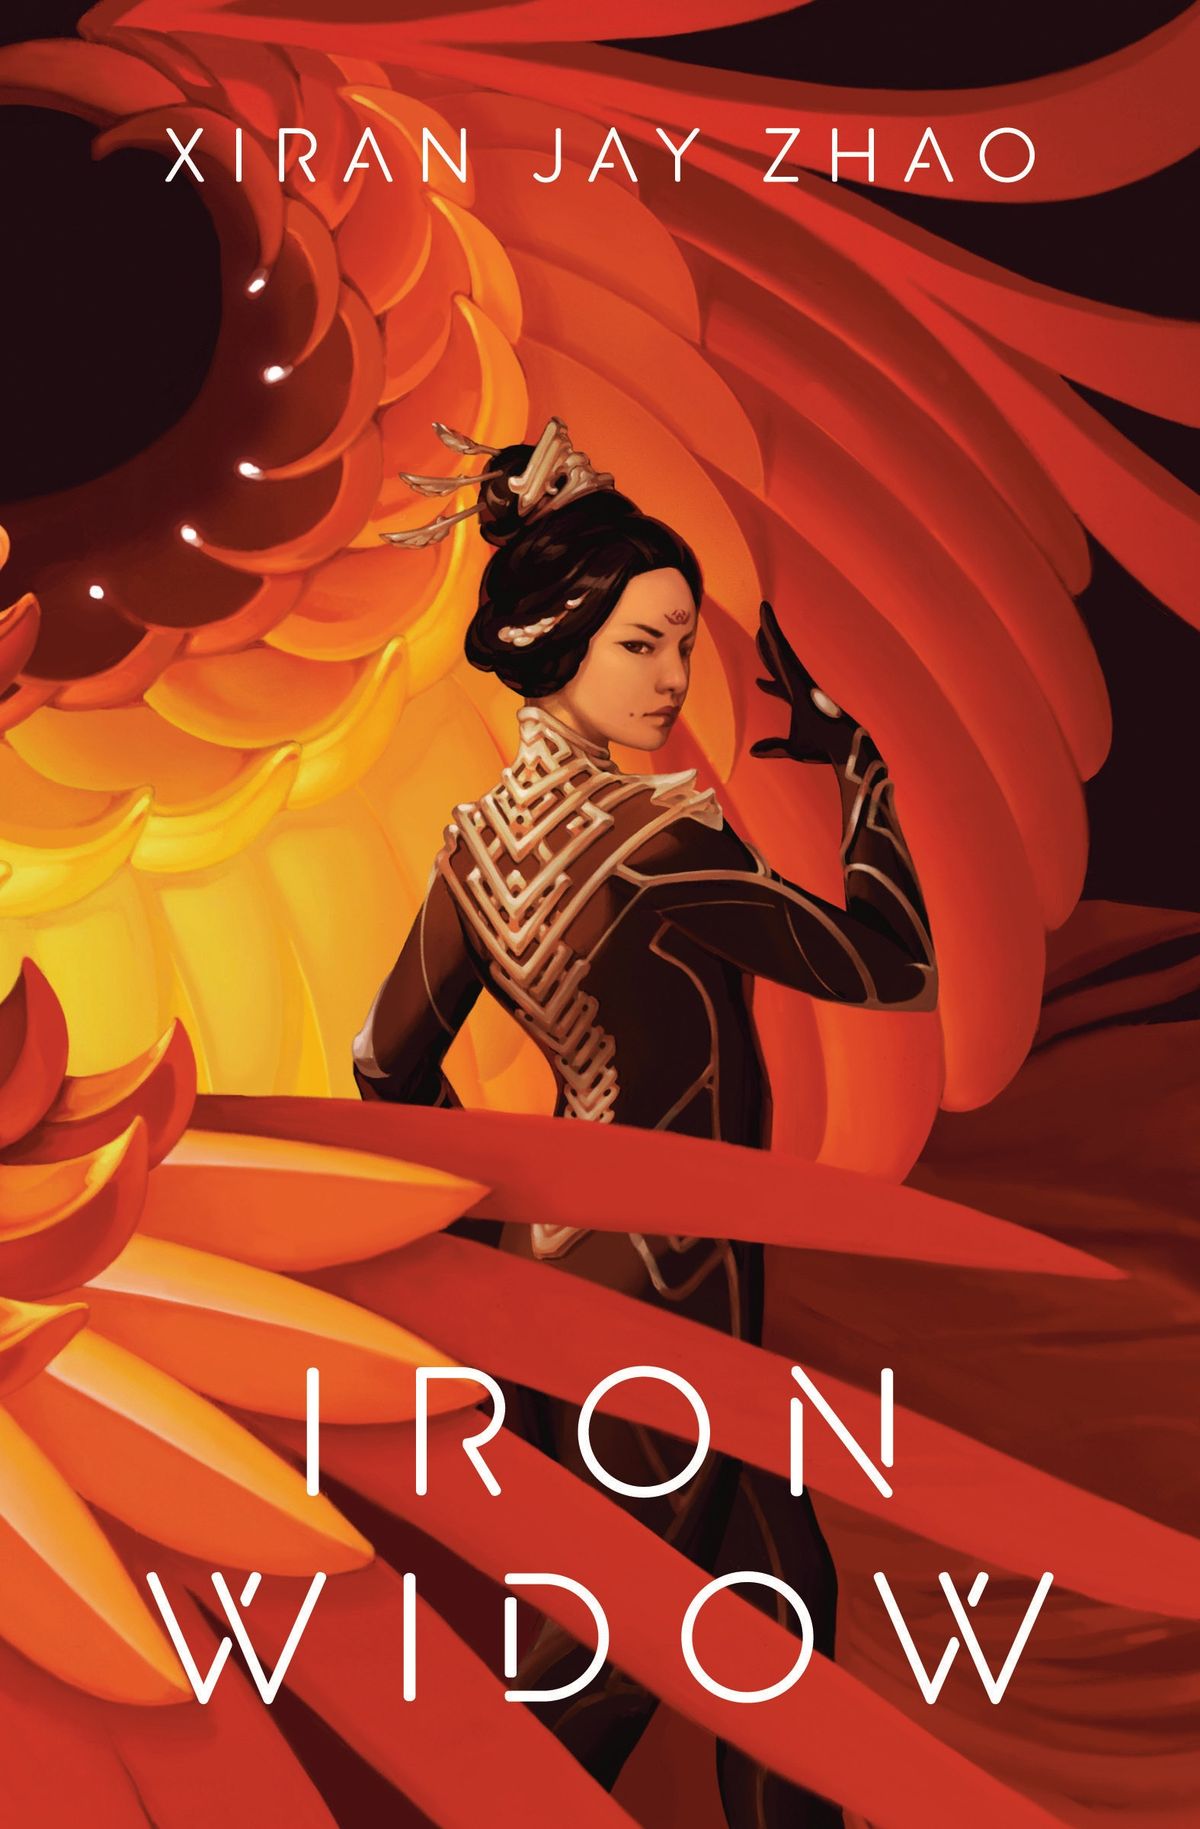 Η Iron Widow του Xiran Jay Zhao συνδυάζει την αρχαία κινεζική κουλτούρα και τη μηχανική επιστημονική φαντασία